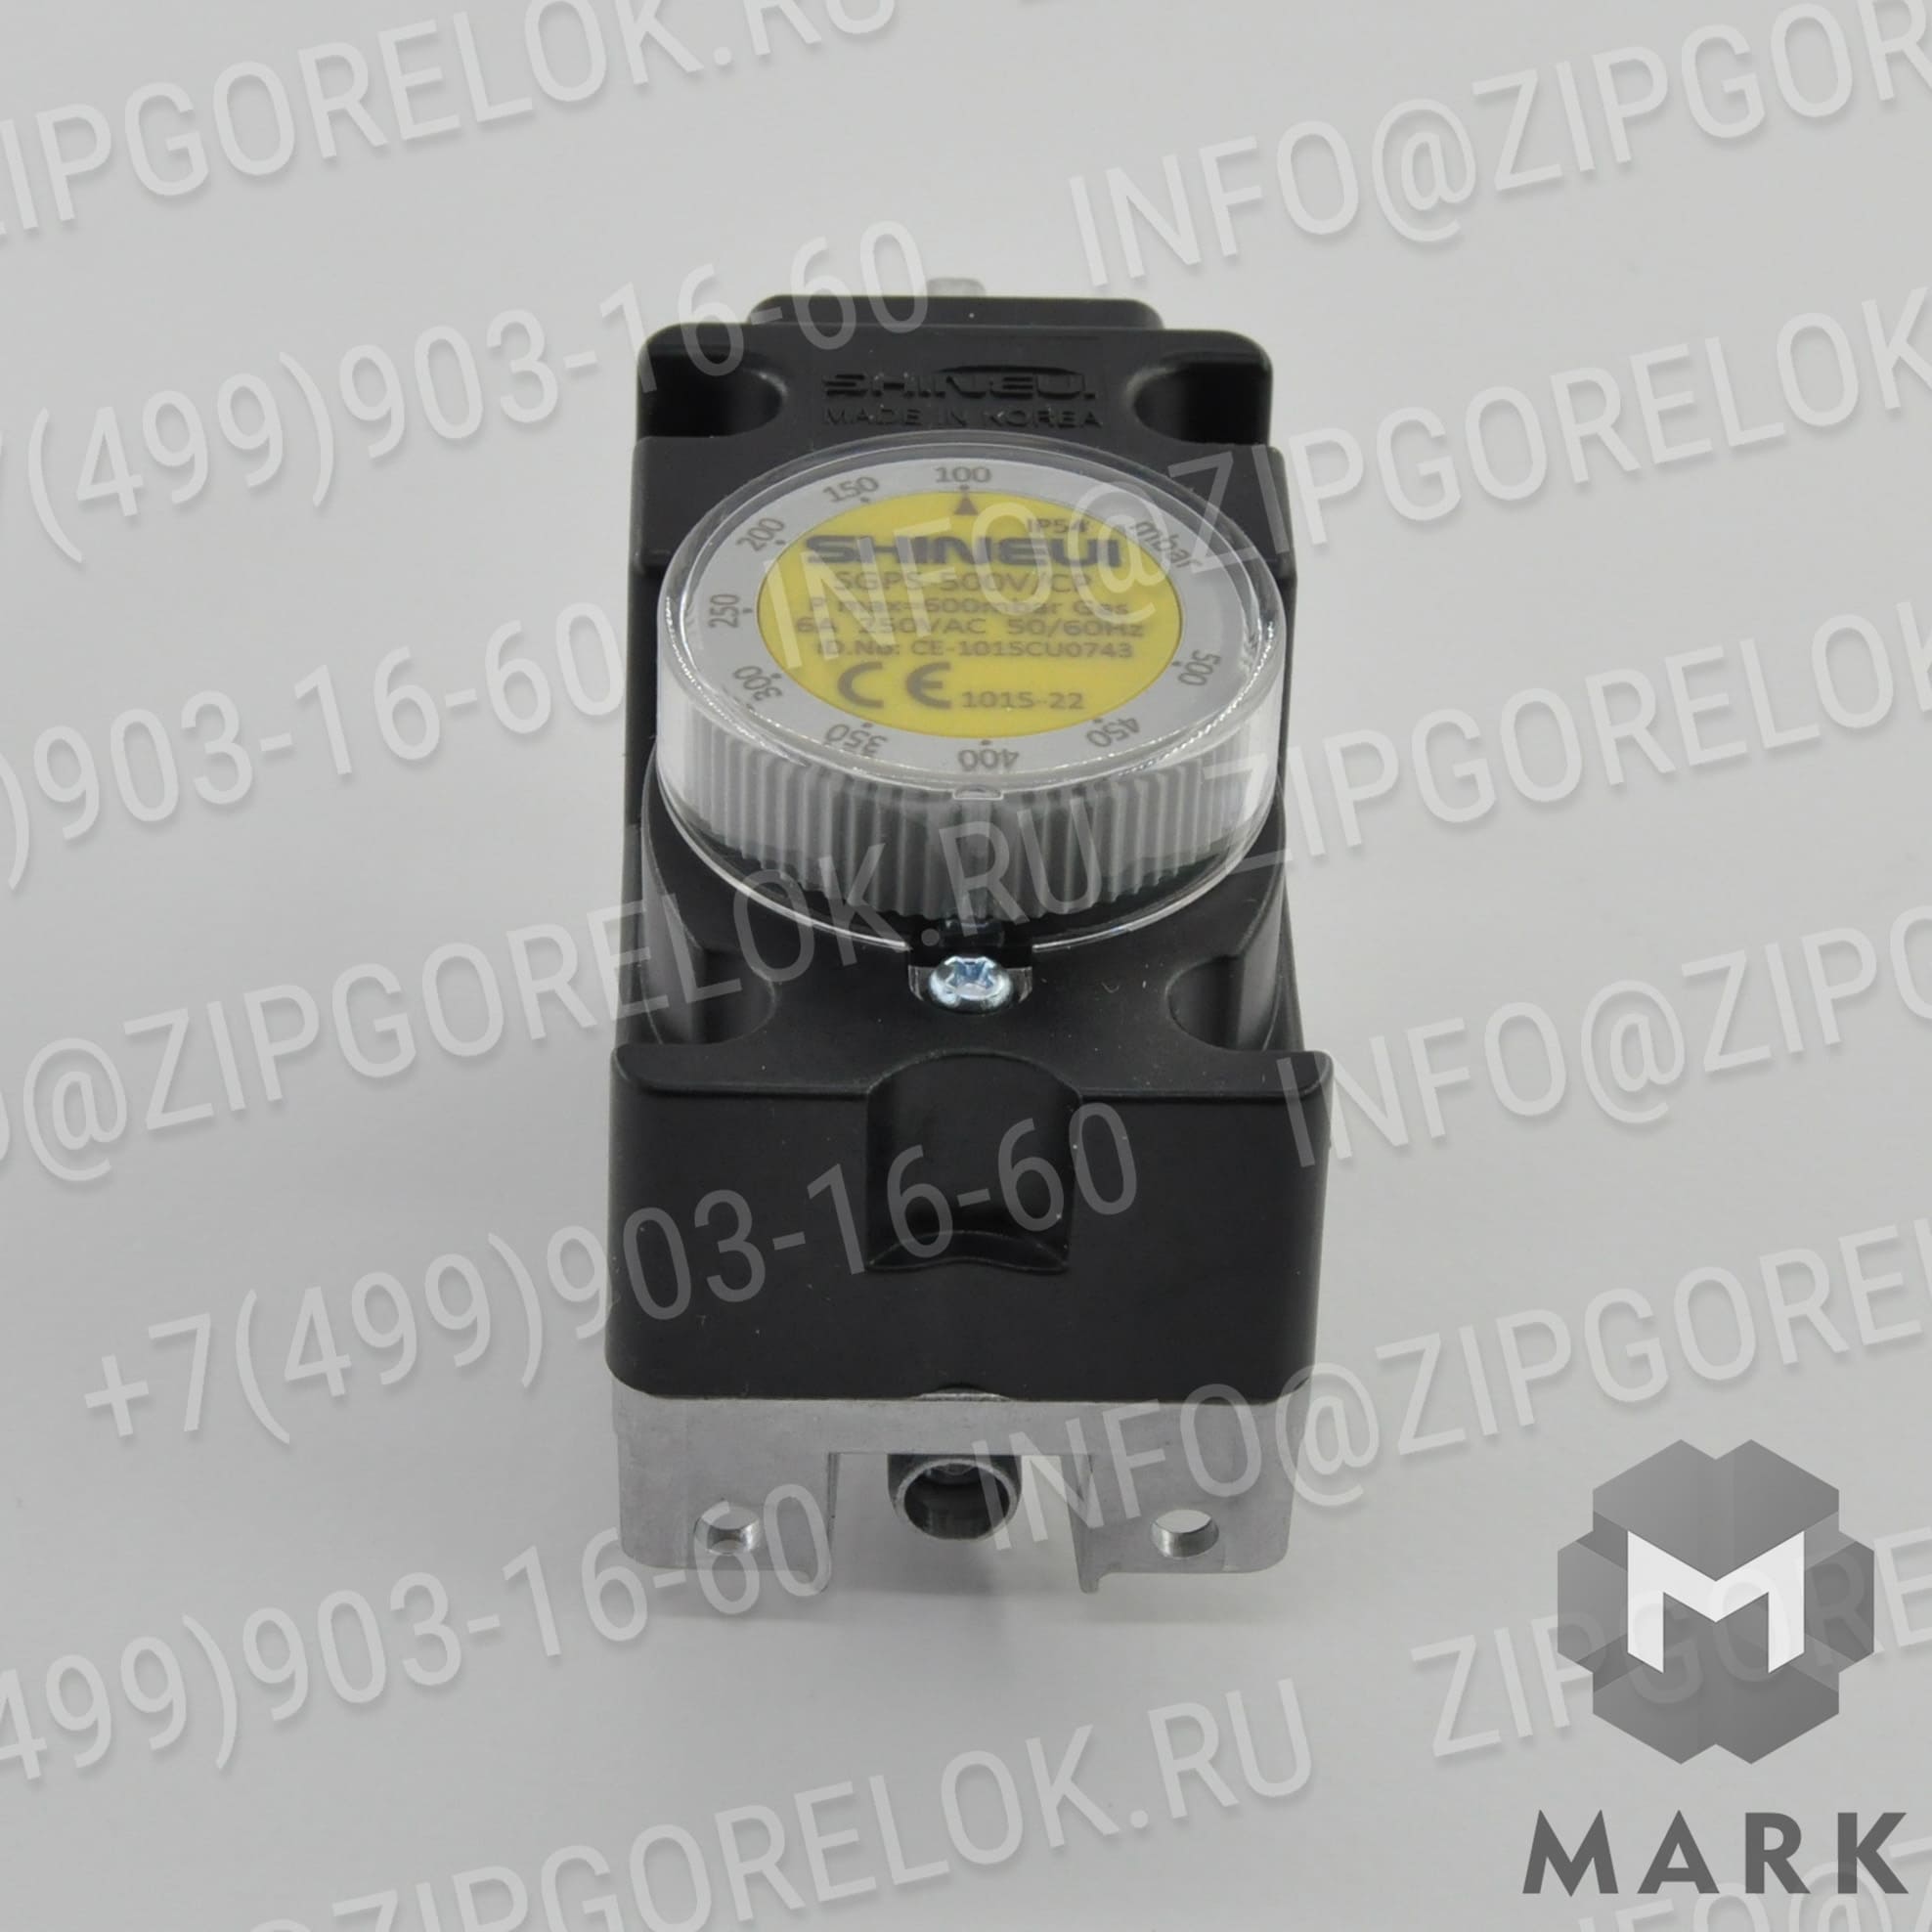 SGPS-500V-CP Топочные автоматы: Терминальный блок для жидкотопливных горелок арт. 13021273